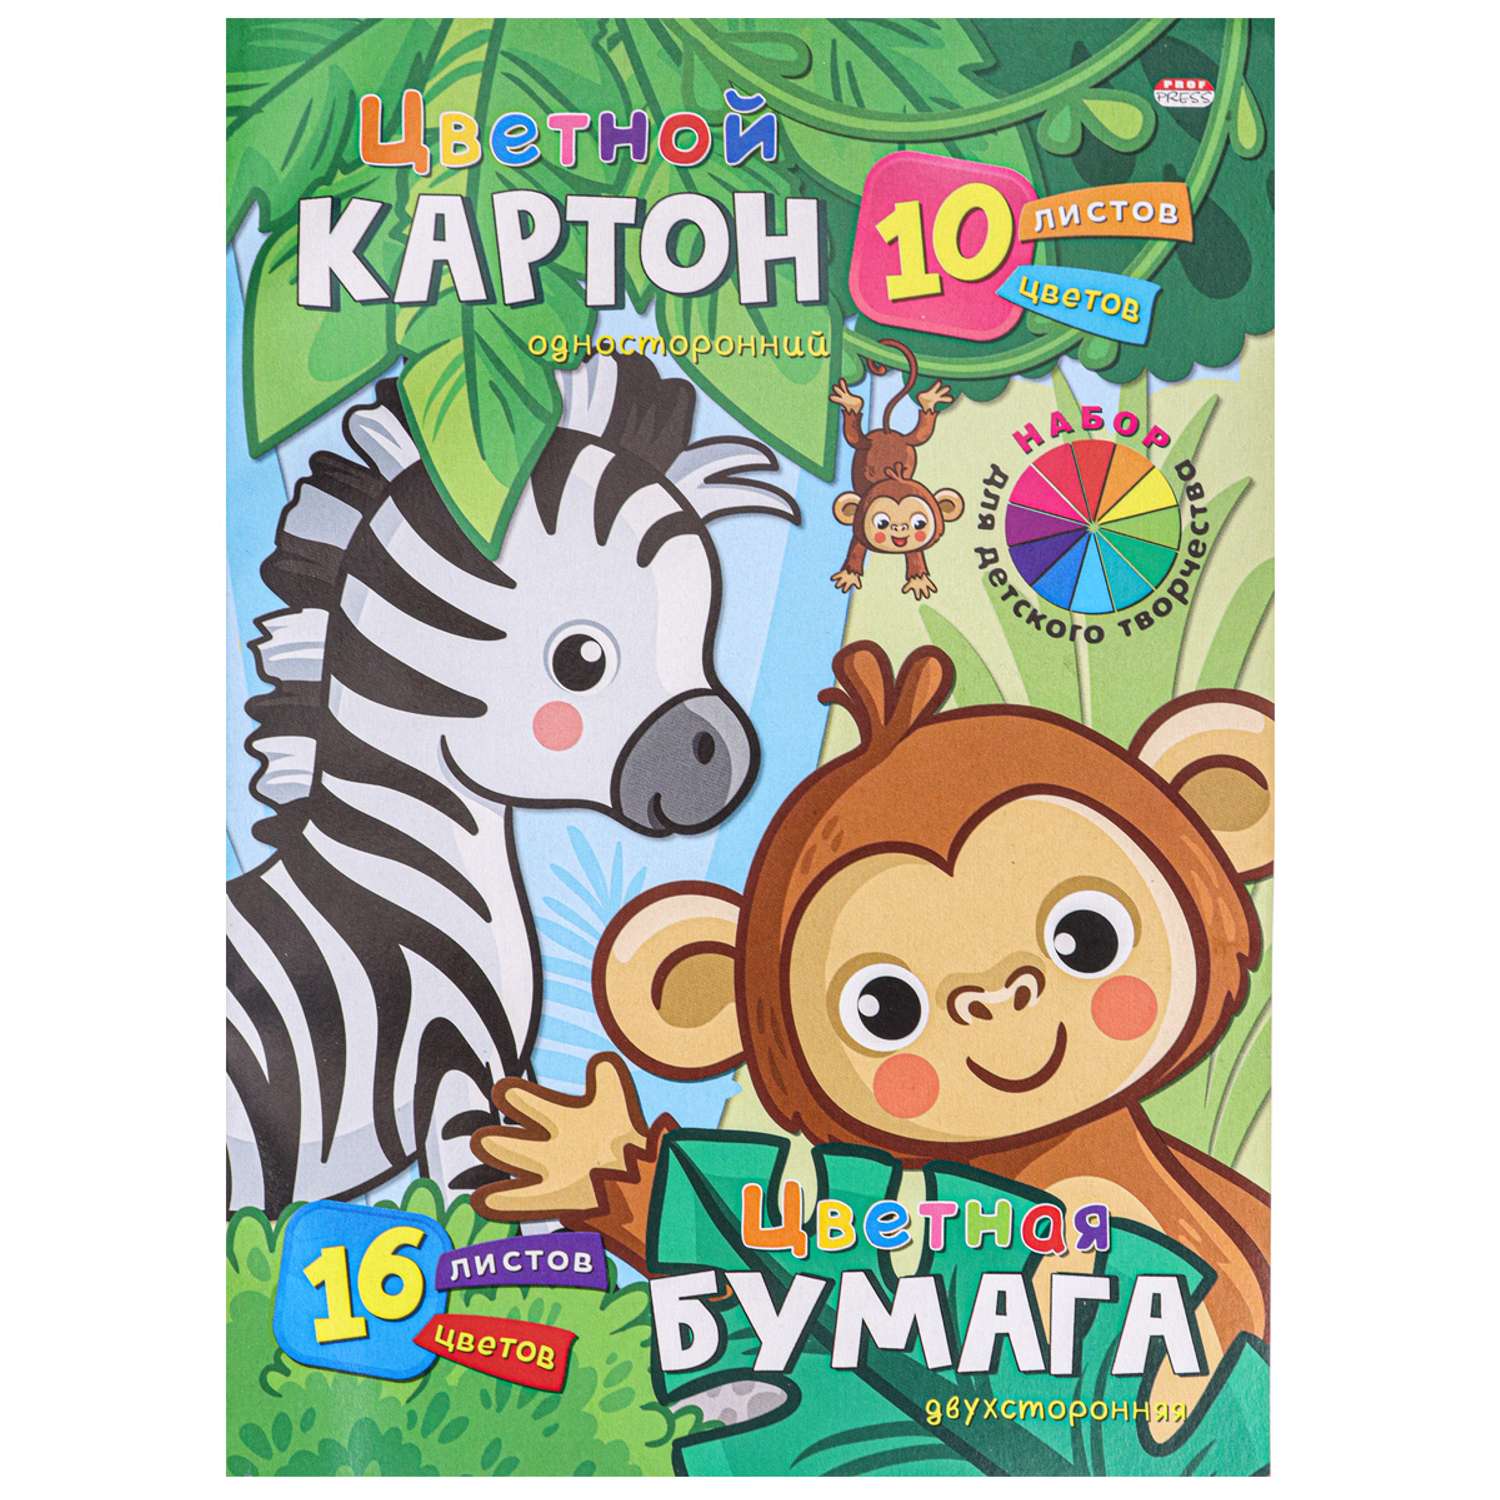 Набор для детского творчества Prof-Press Зверушки из джунглей А4 цветной картон 10 листов бумага 16 листов - фото 1